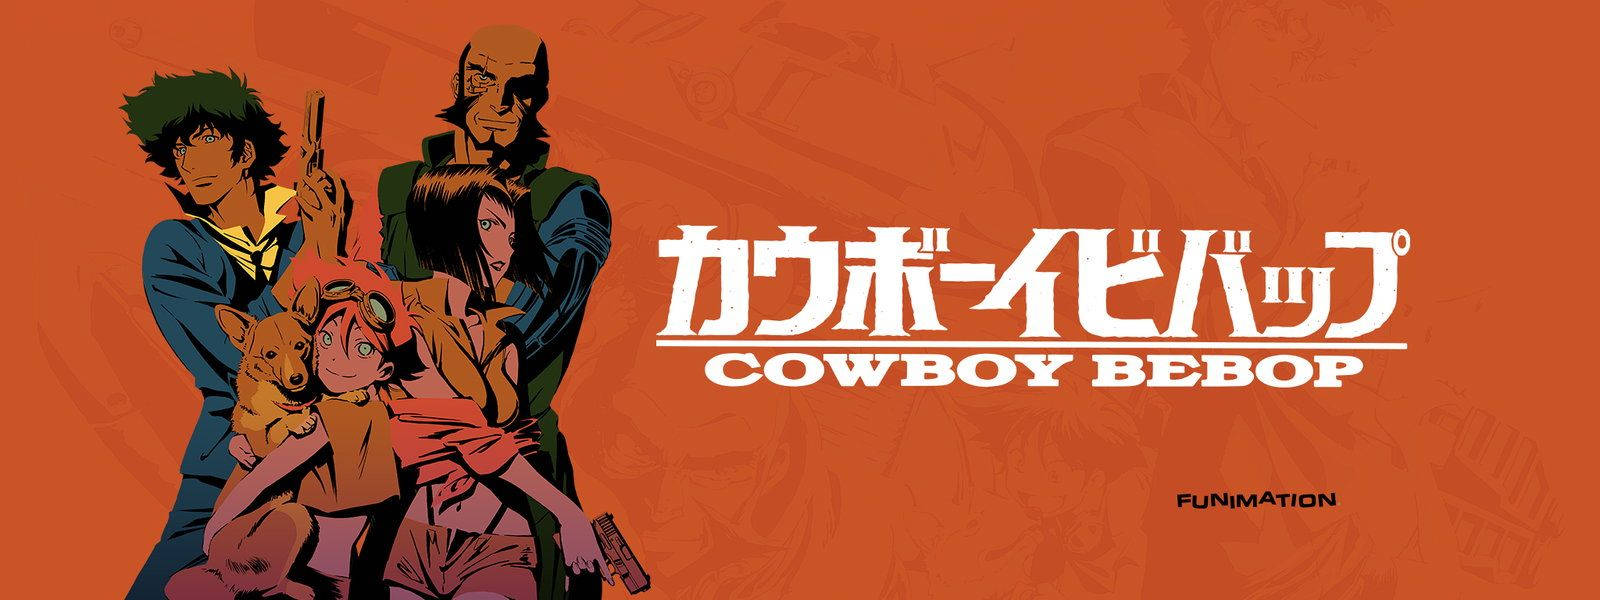 Cowboy Bebop Characters Wallpaper